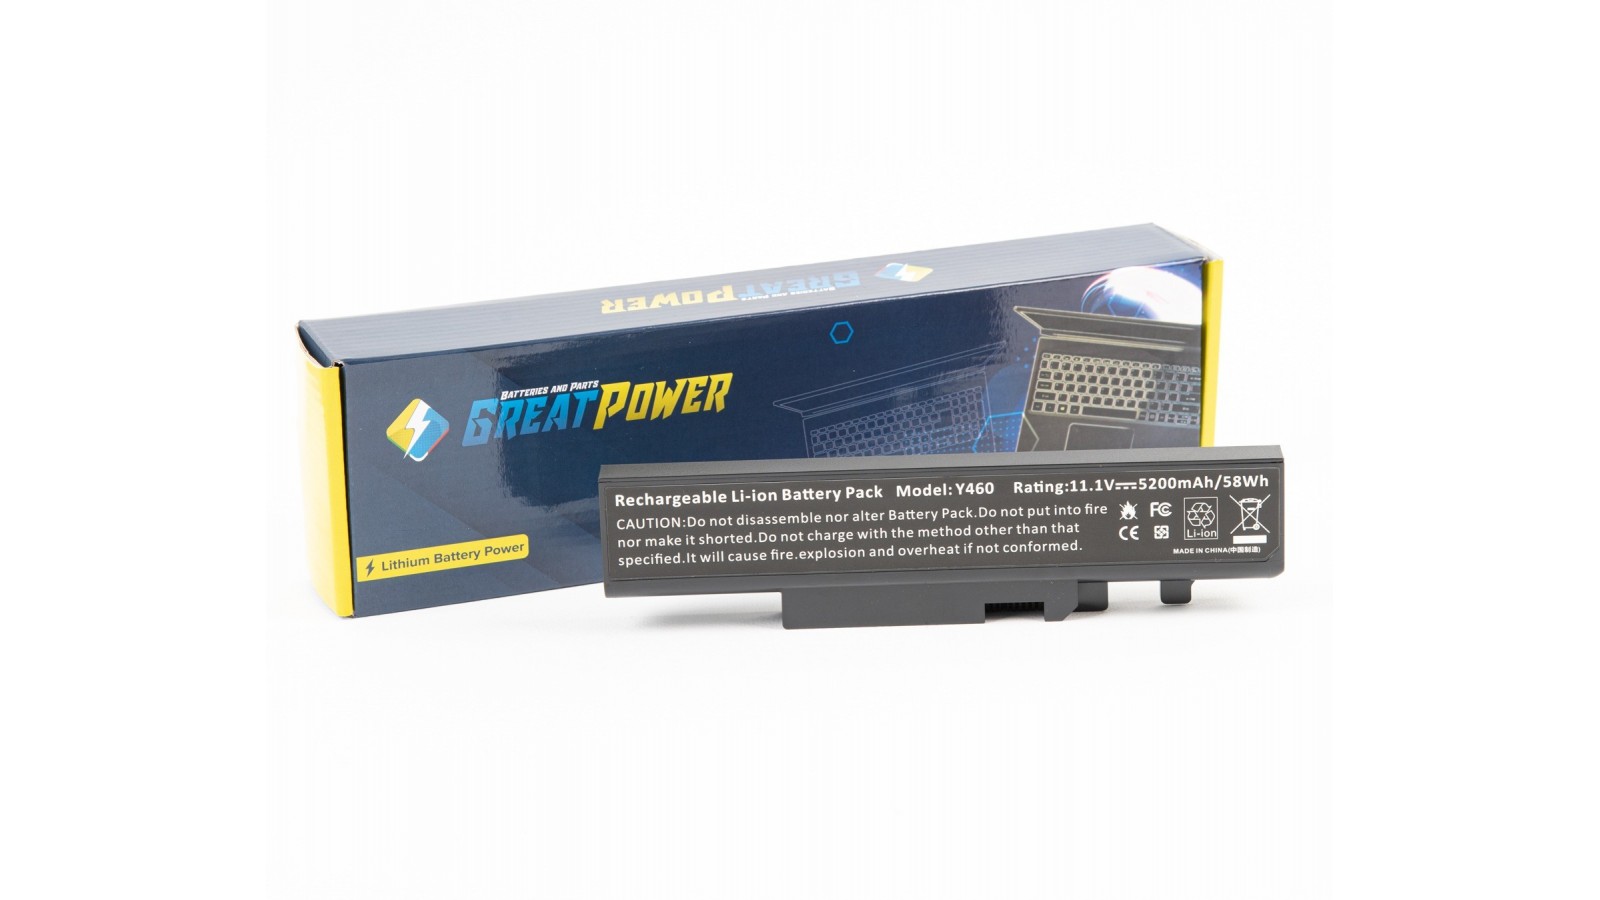 Batteria 5200mAh compatibile con Lenovo IdeaPad Y460 Y560